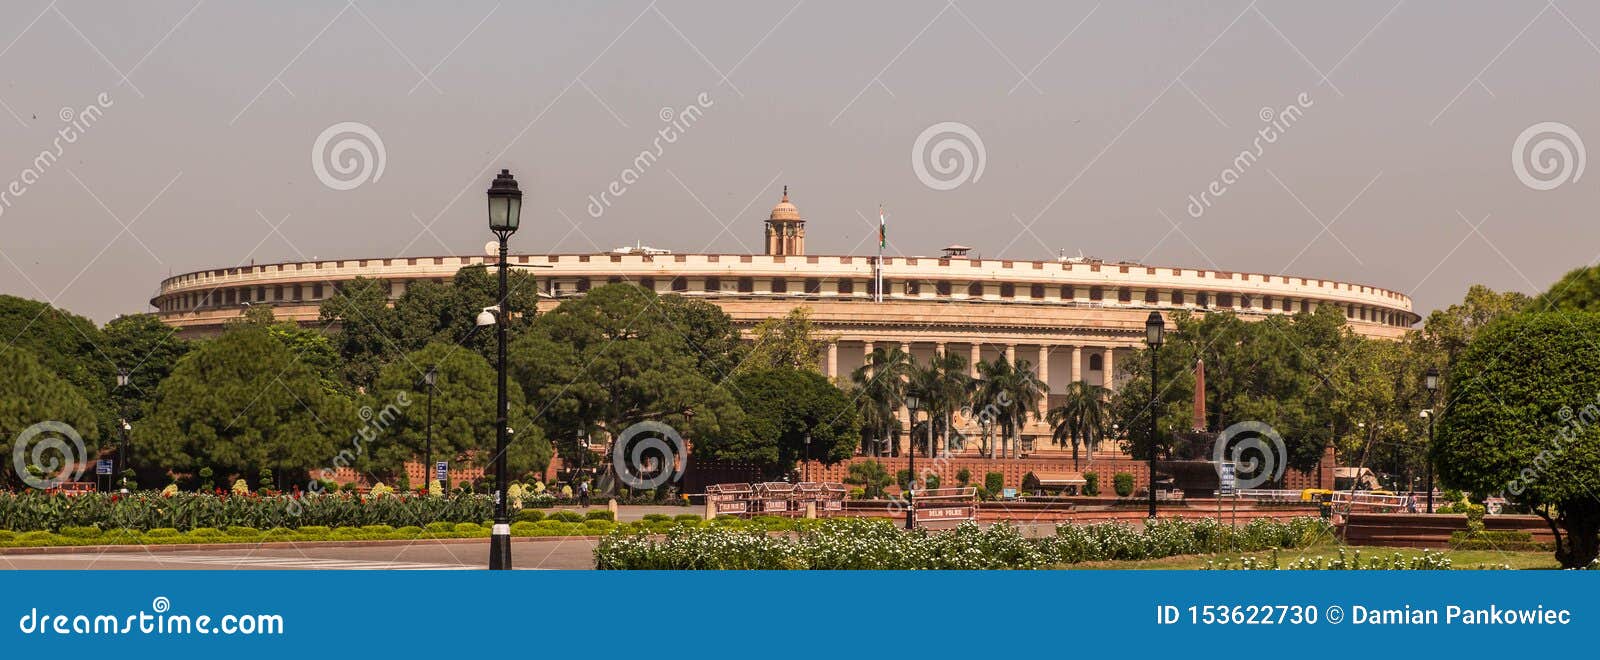 parliament of india in delhi